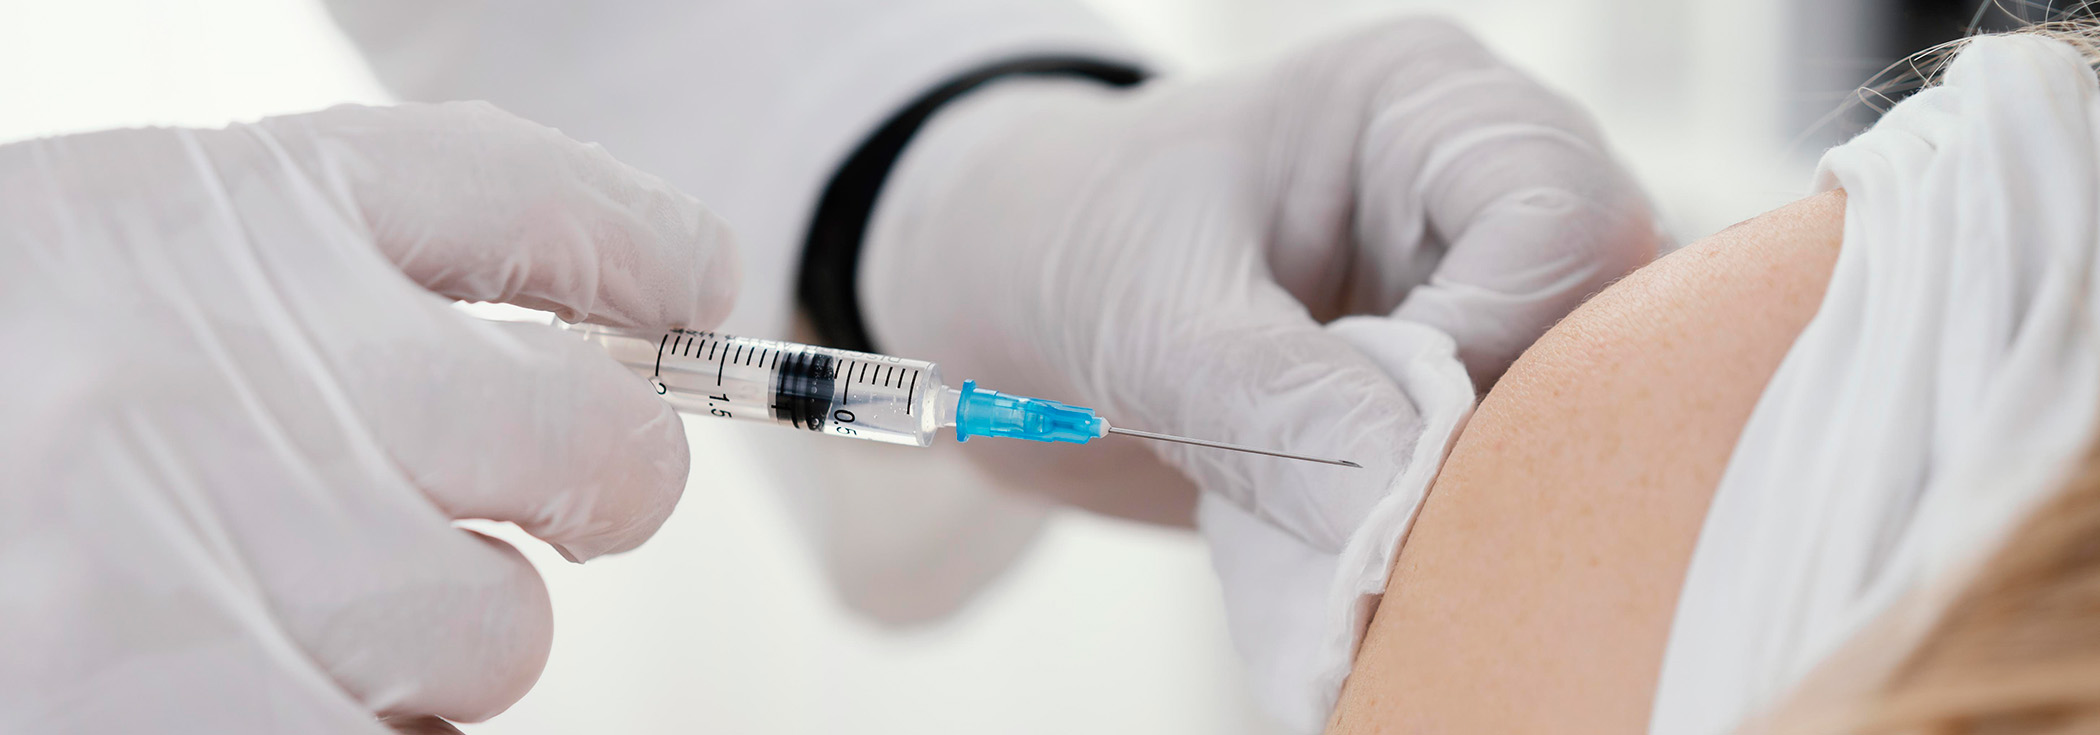 Ockovanie proti HPV vakcinacia poliklinika Frais